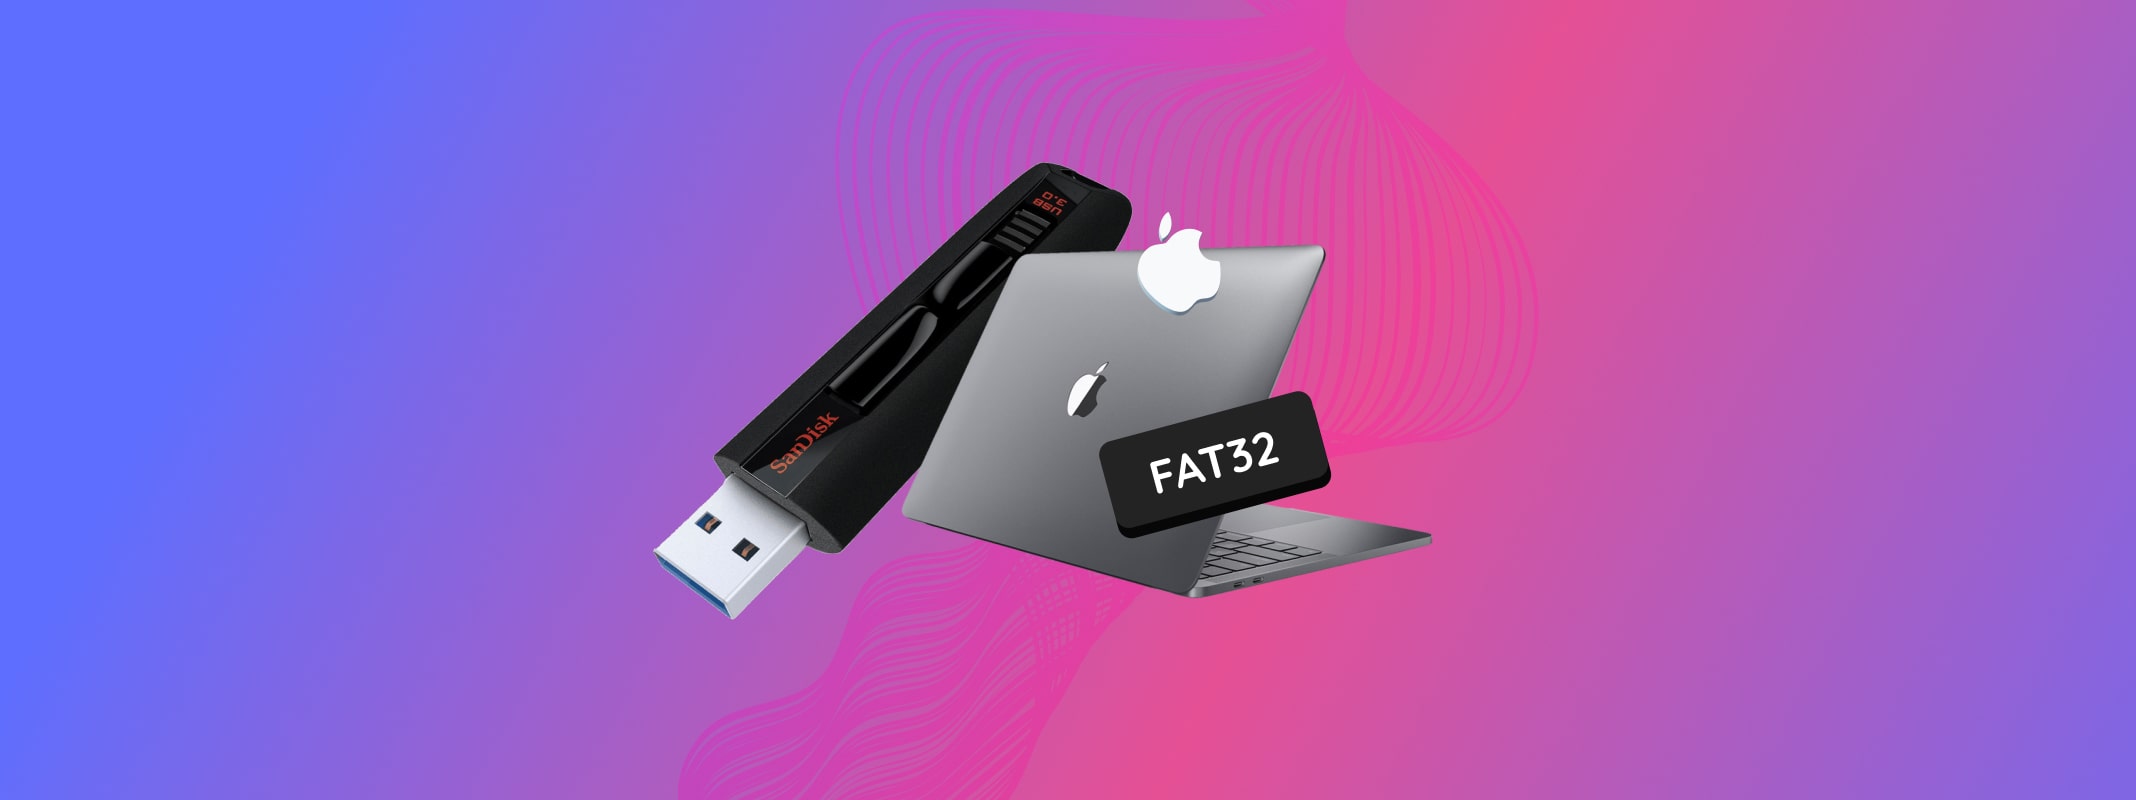 format usb drive fat32 mac